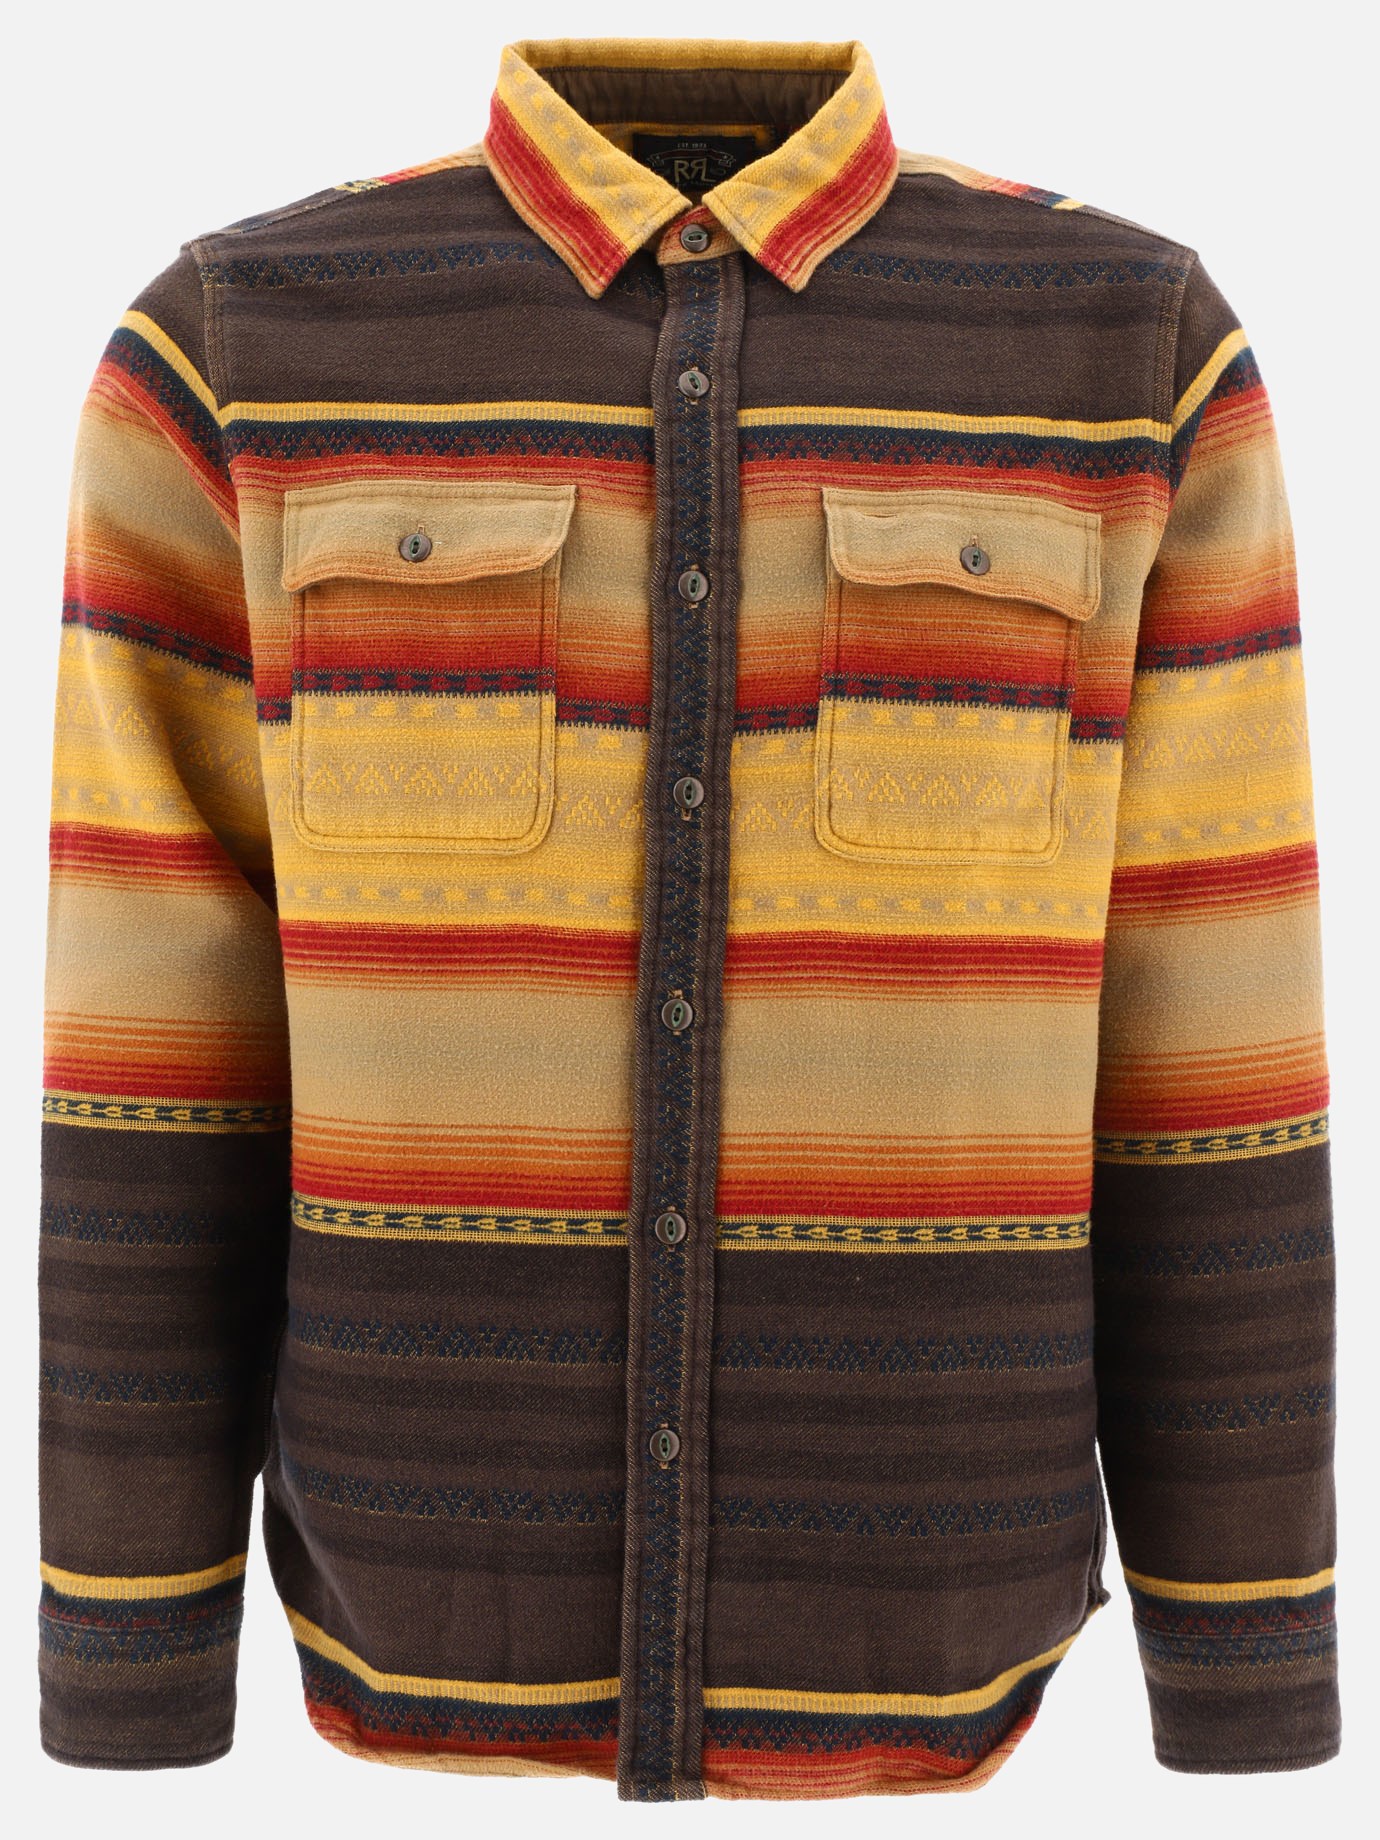  Matlock Western  shirtby RRL by Ralph Lauren - 3